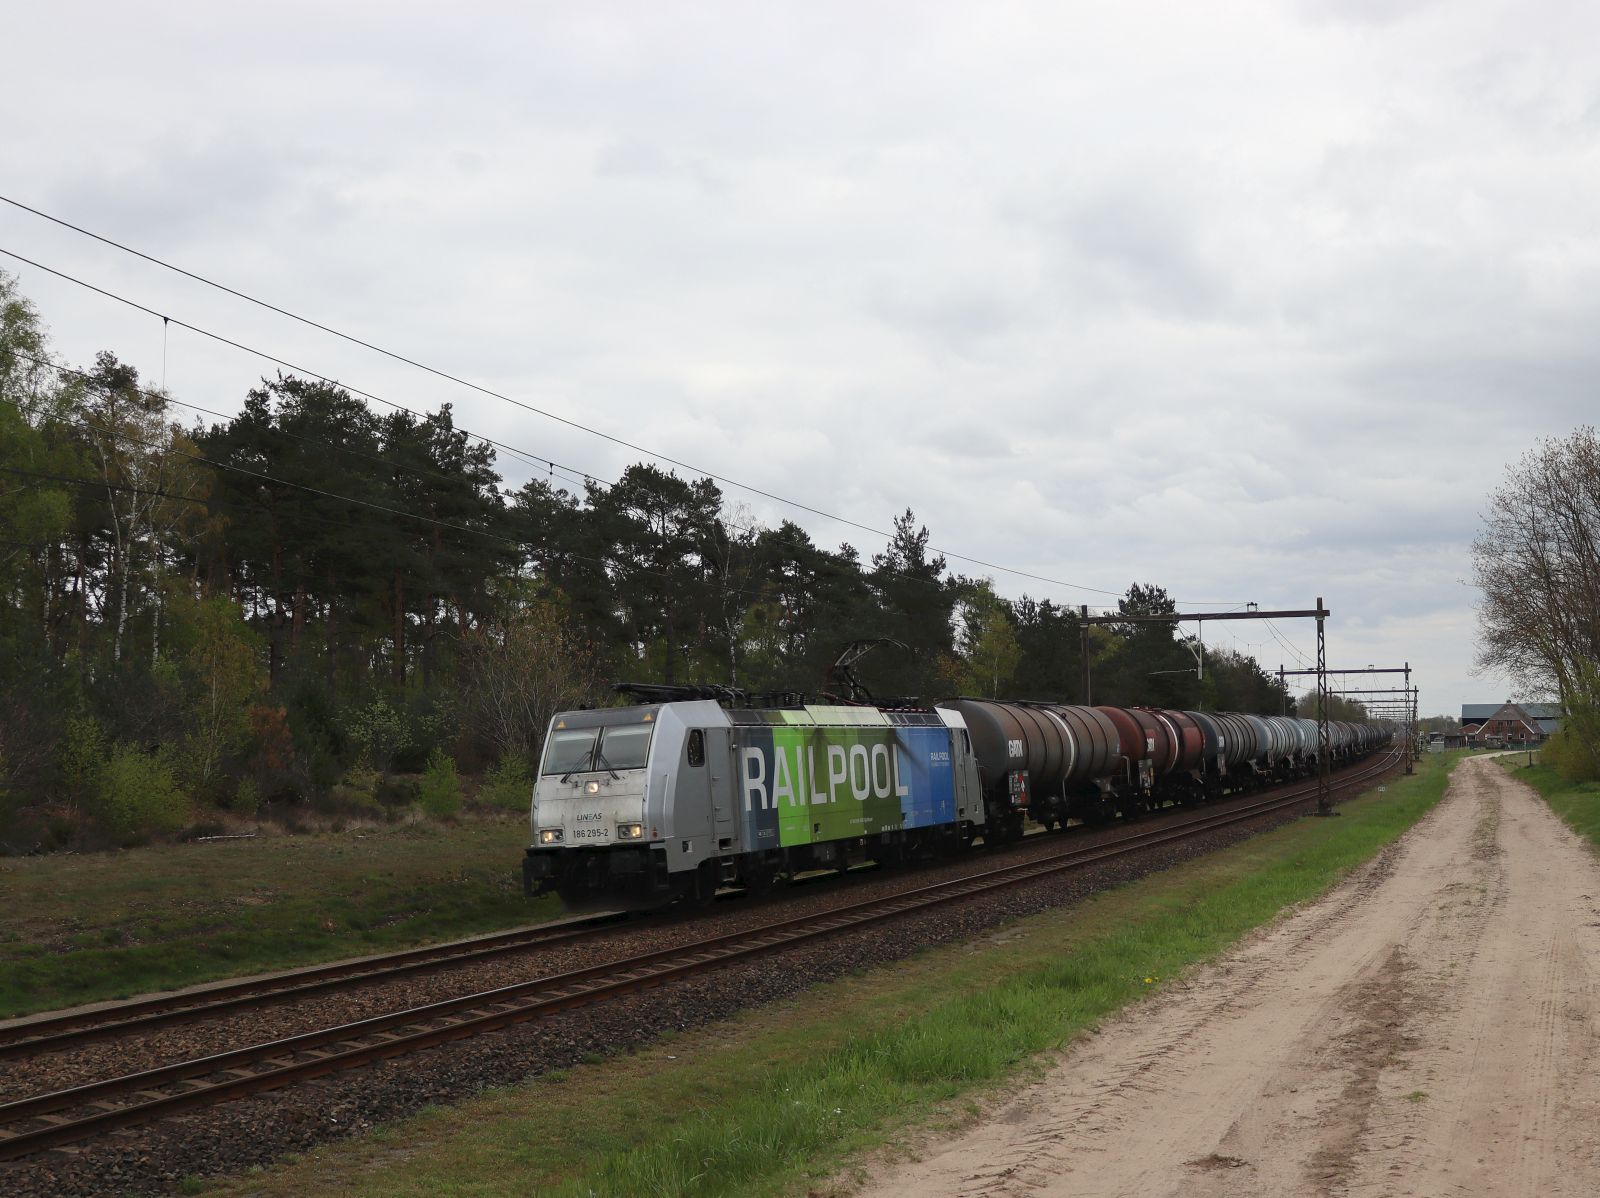 Railpool Lokomotive 186 295-2 mit Aufschrift Lineas. Veenweg, Holten 26-04-2023.

Railpool locomotief 186 295-2 met opschrift Lineas. Veenweg, Holten 26-04-2023.